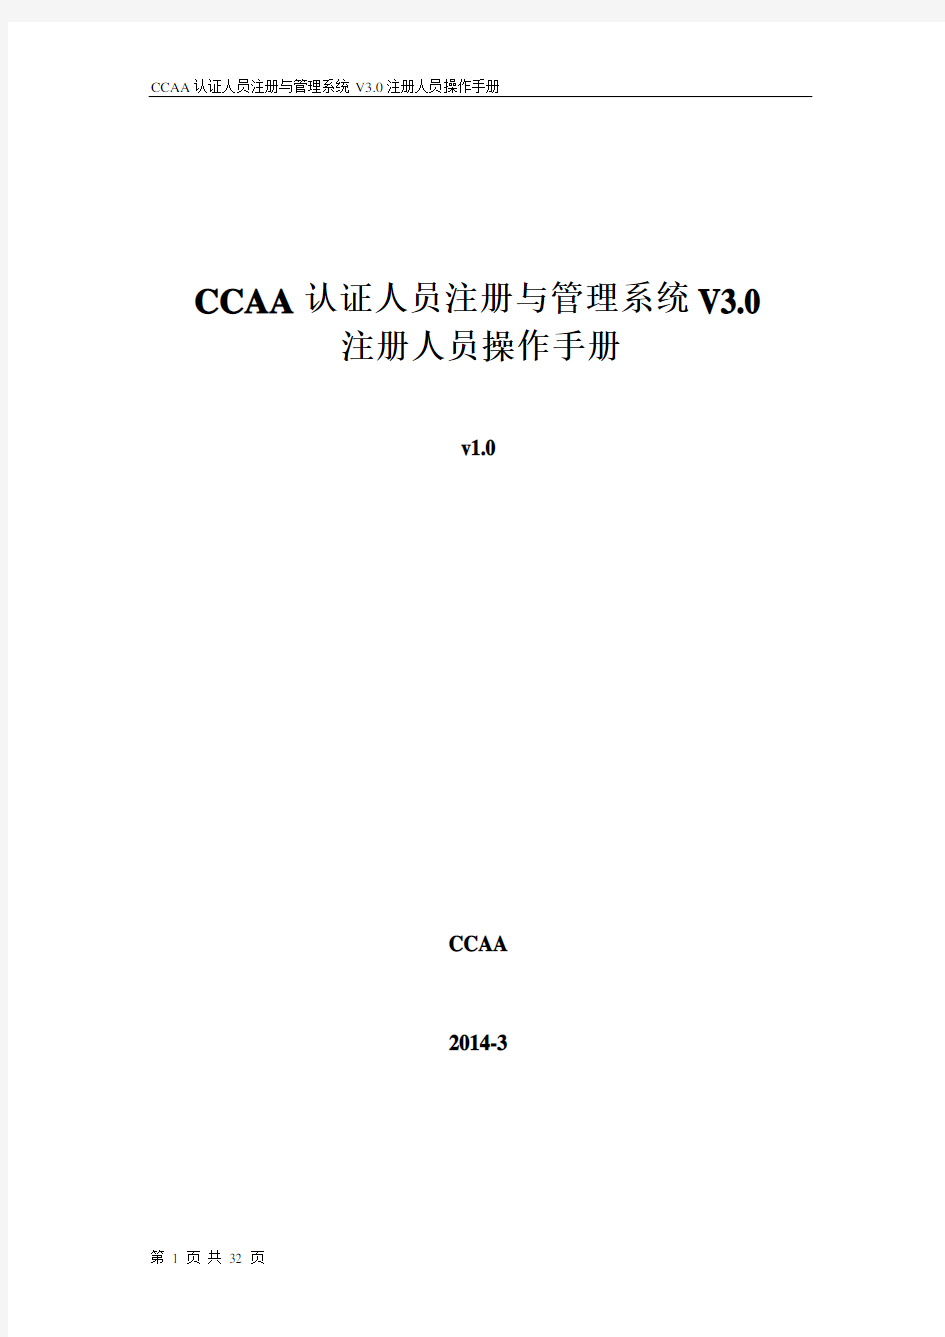 CCAA认证人员注册与管理系统V3